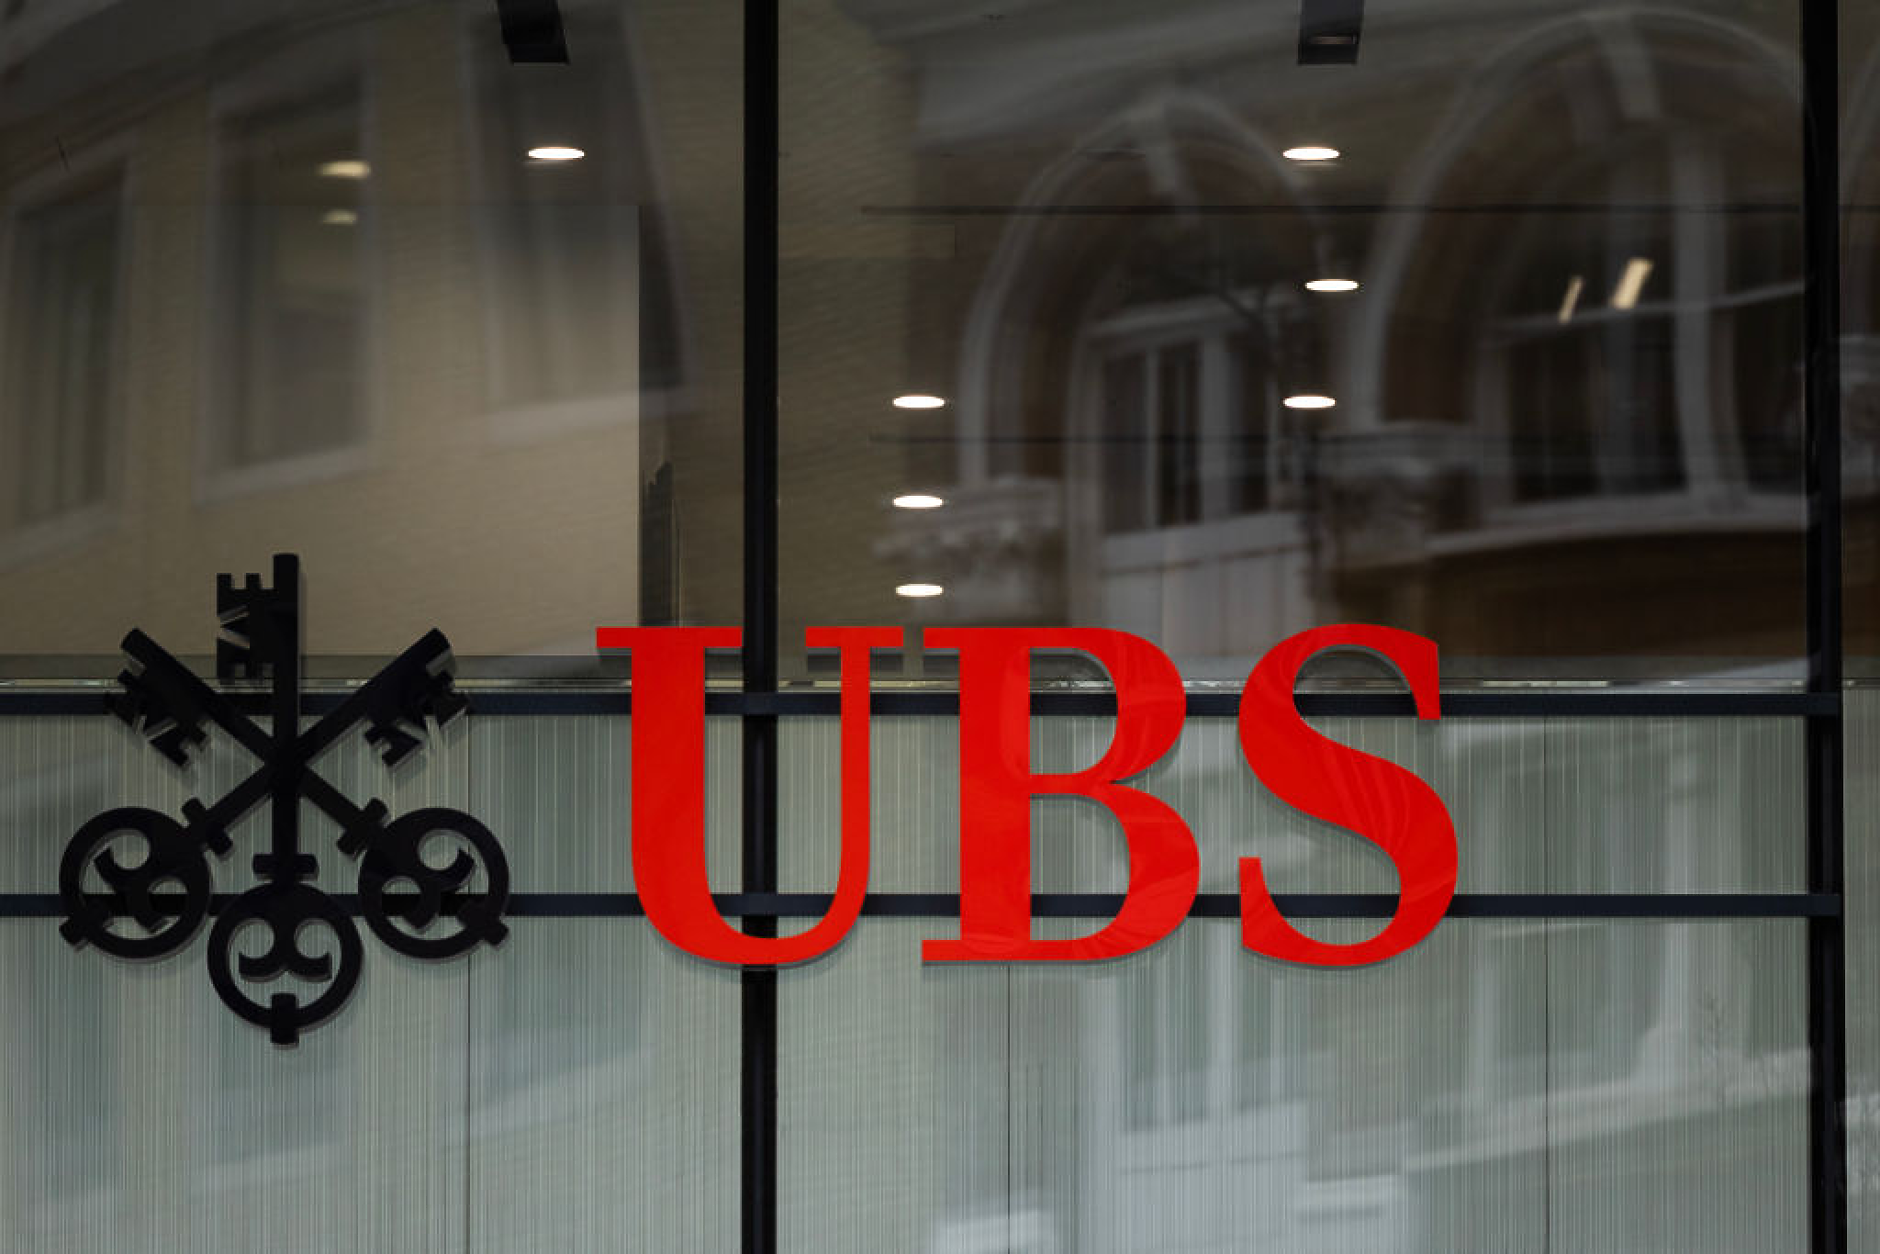 UBS била принудена да придобие Credit Suisse, въпреки че не искала сделката